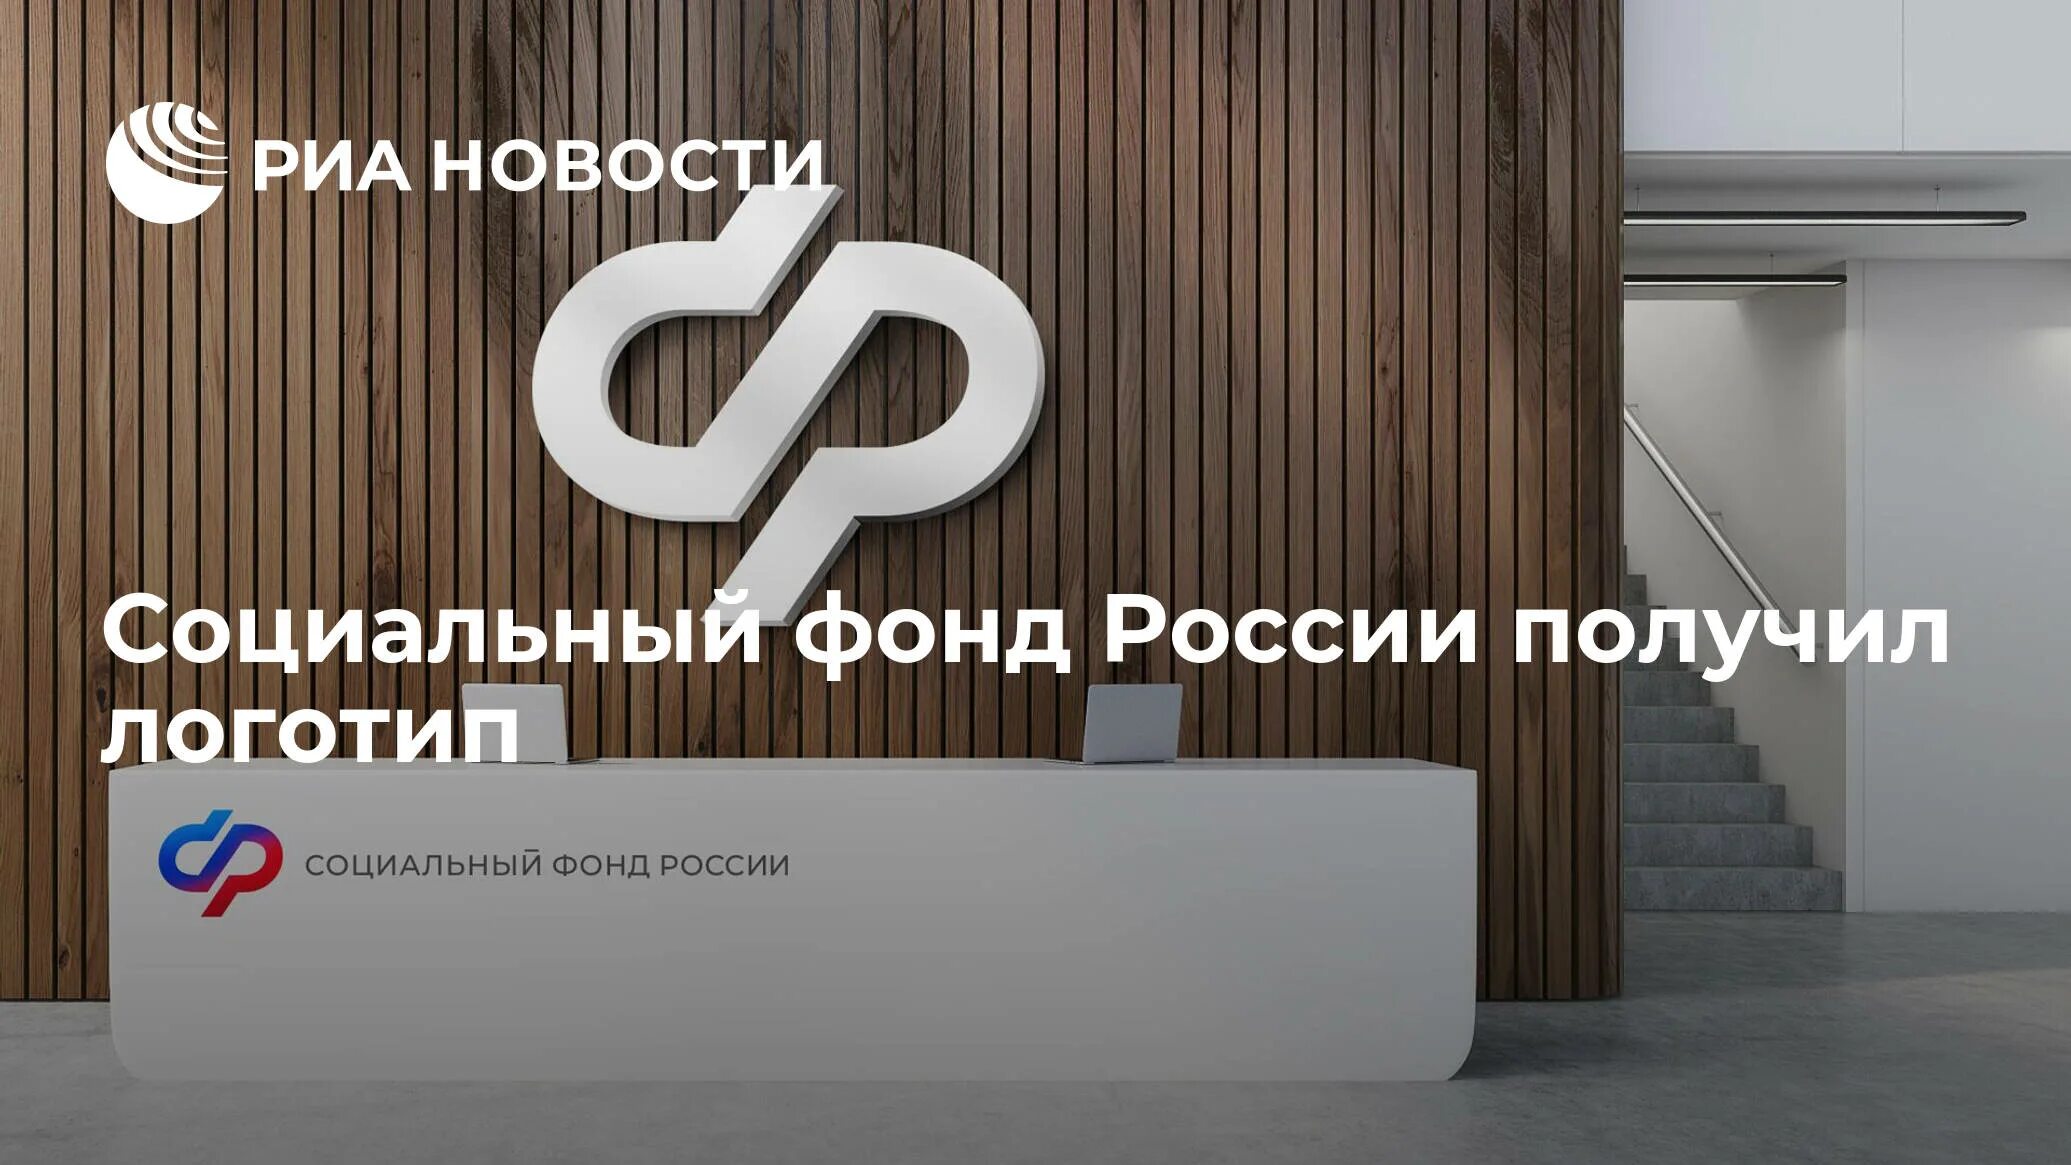 Социальный фонд России логотип. Социальный фонд России вывеска. Социальный фонд России логотип с 2023.